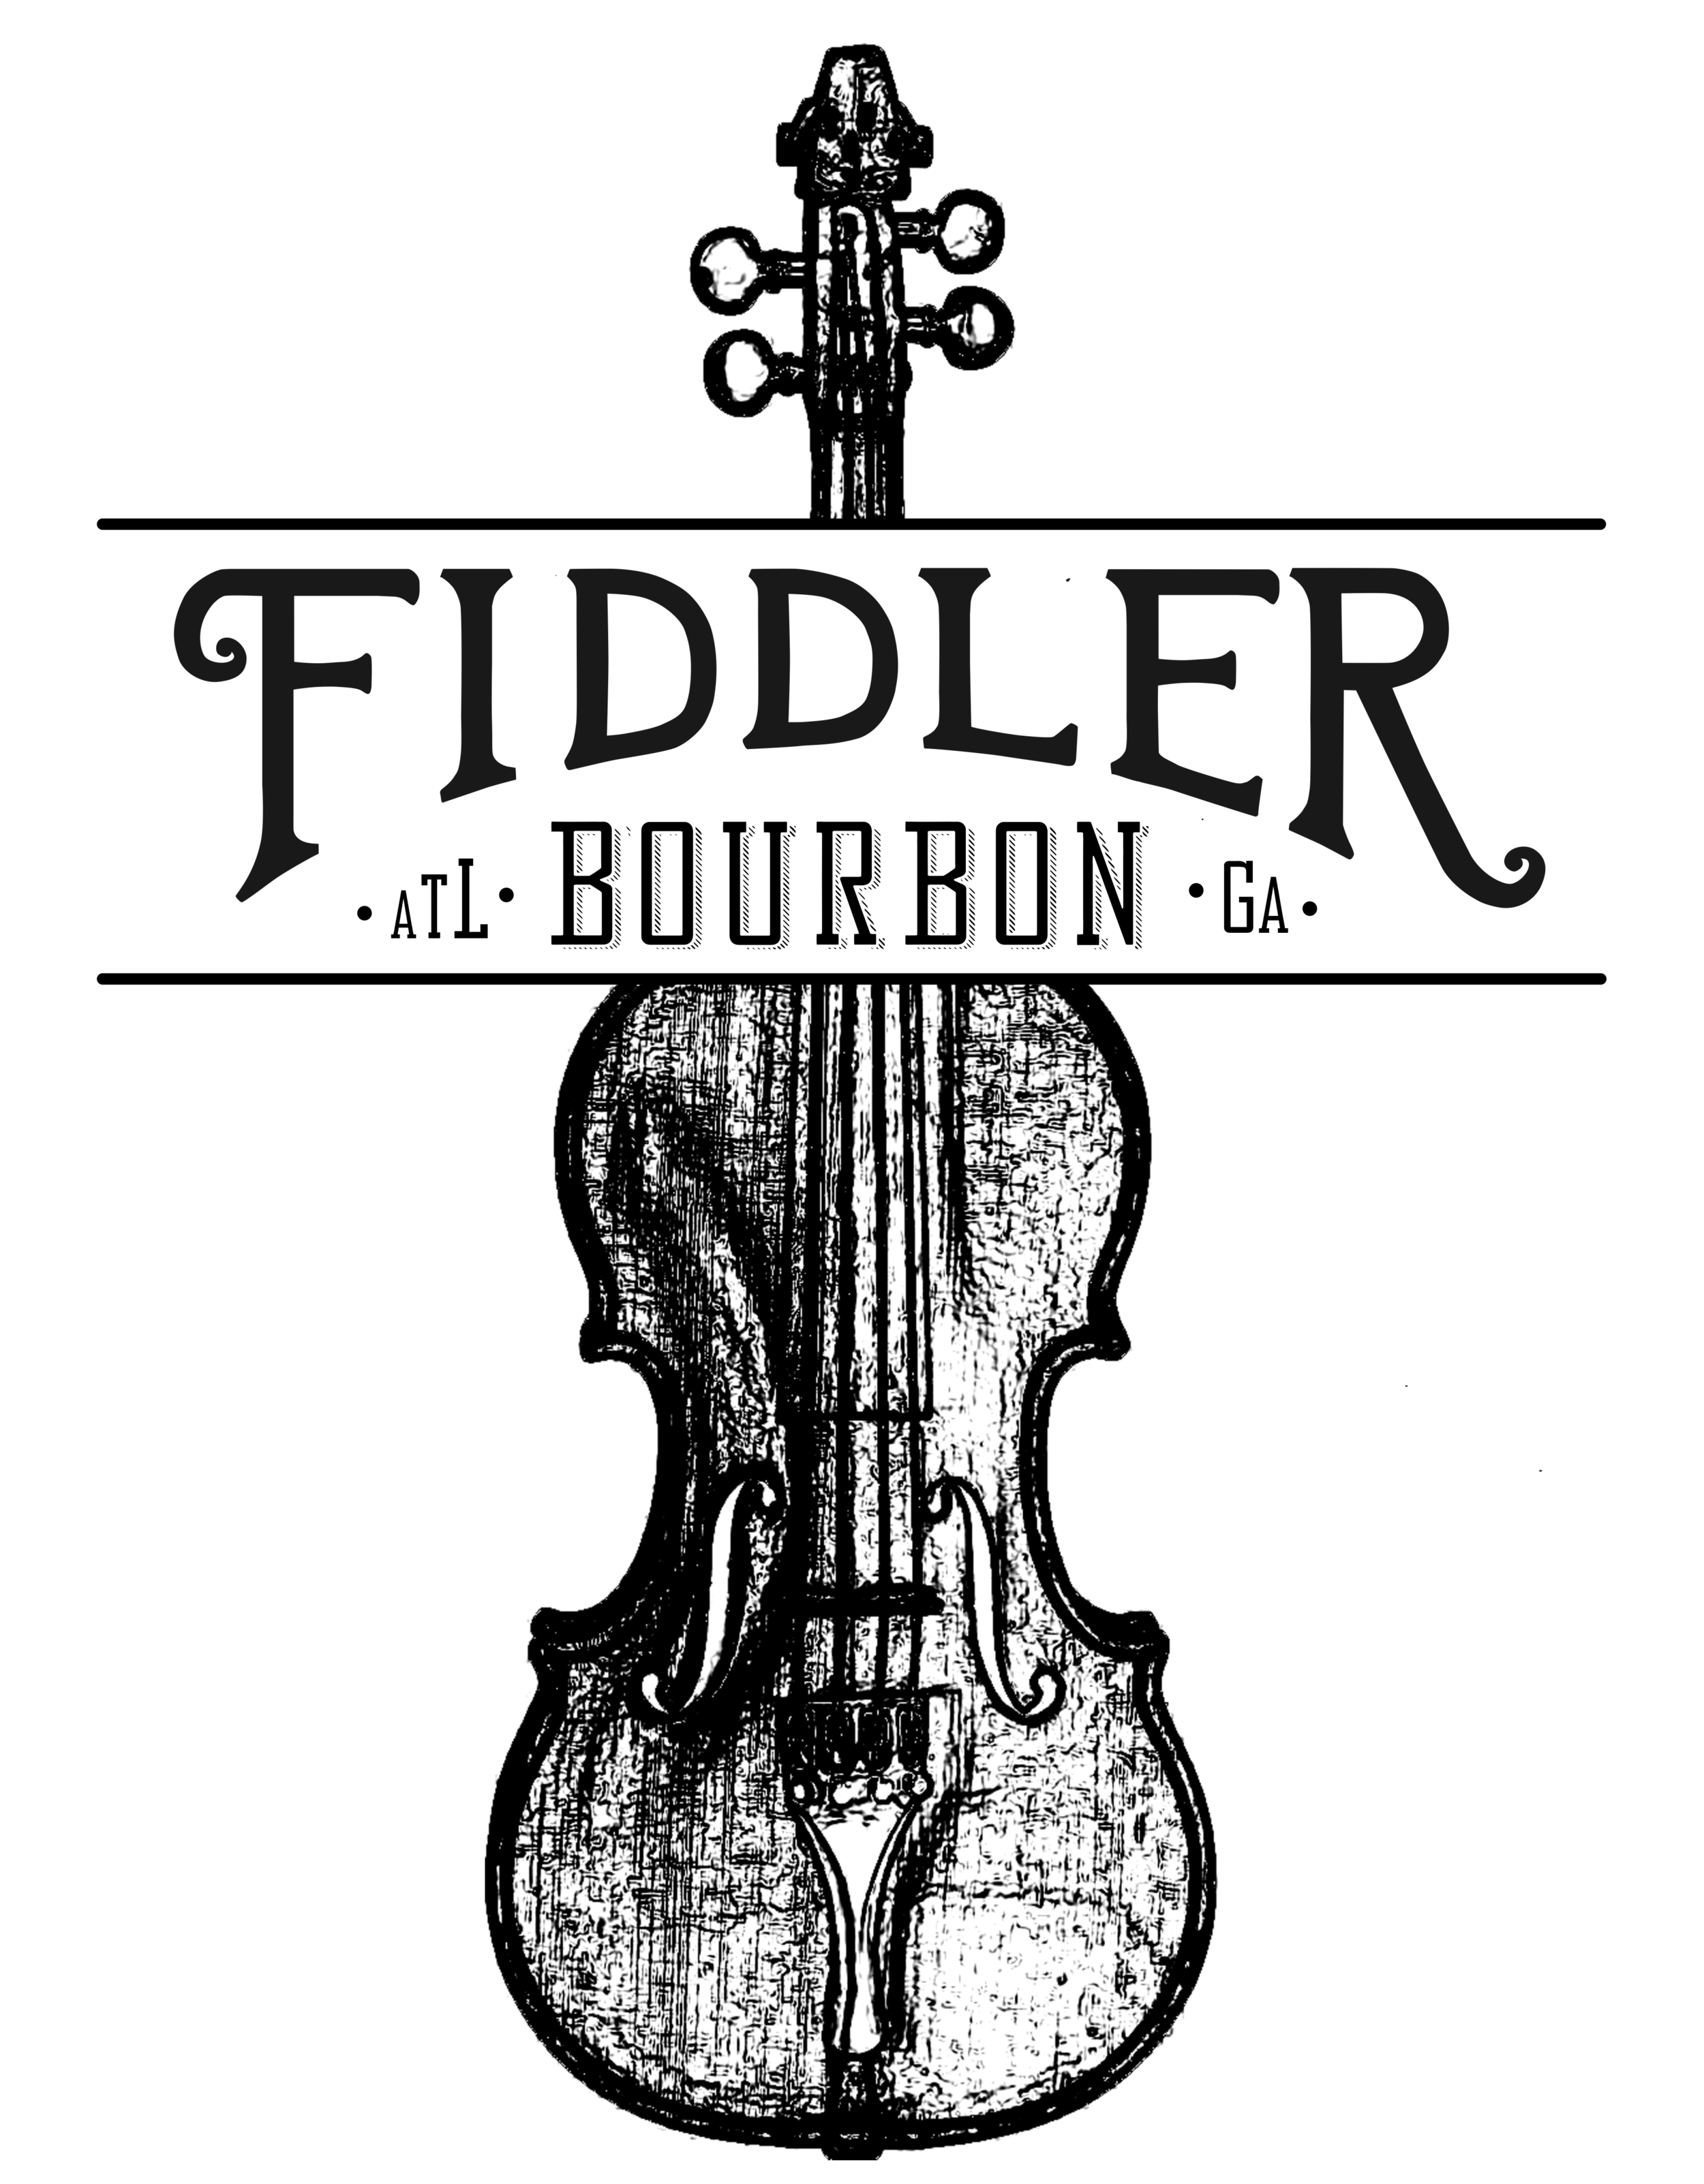 Fiddler Whiskey